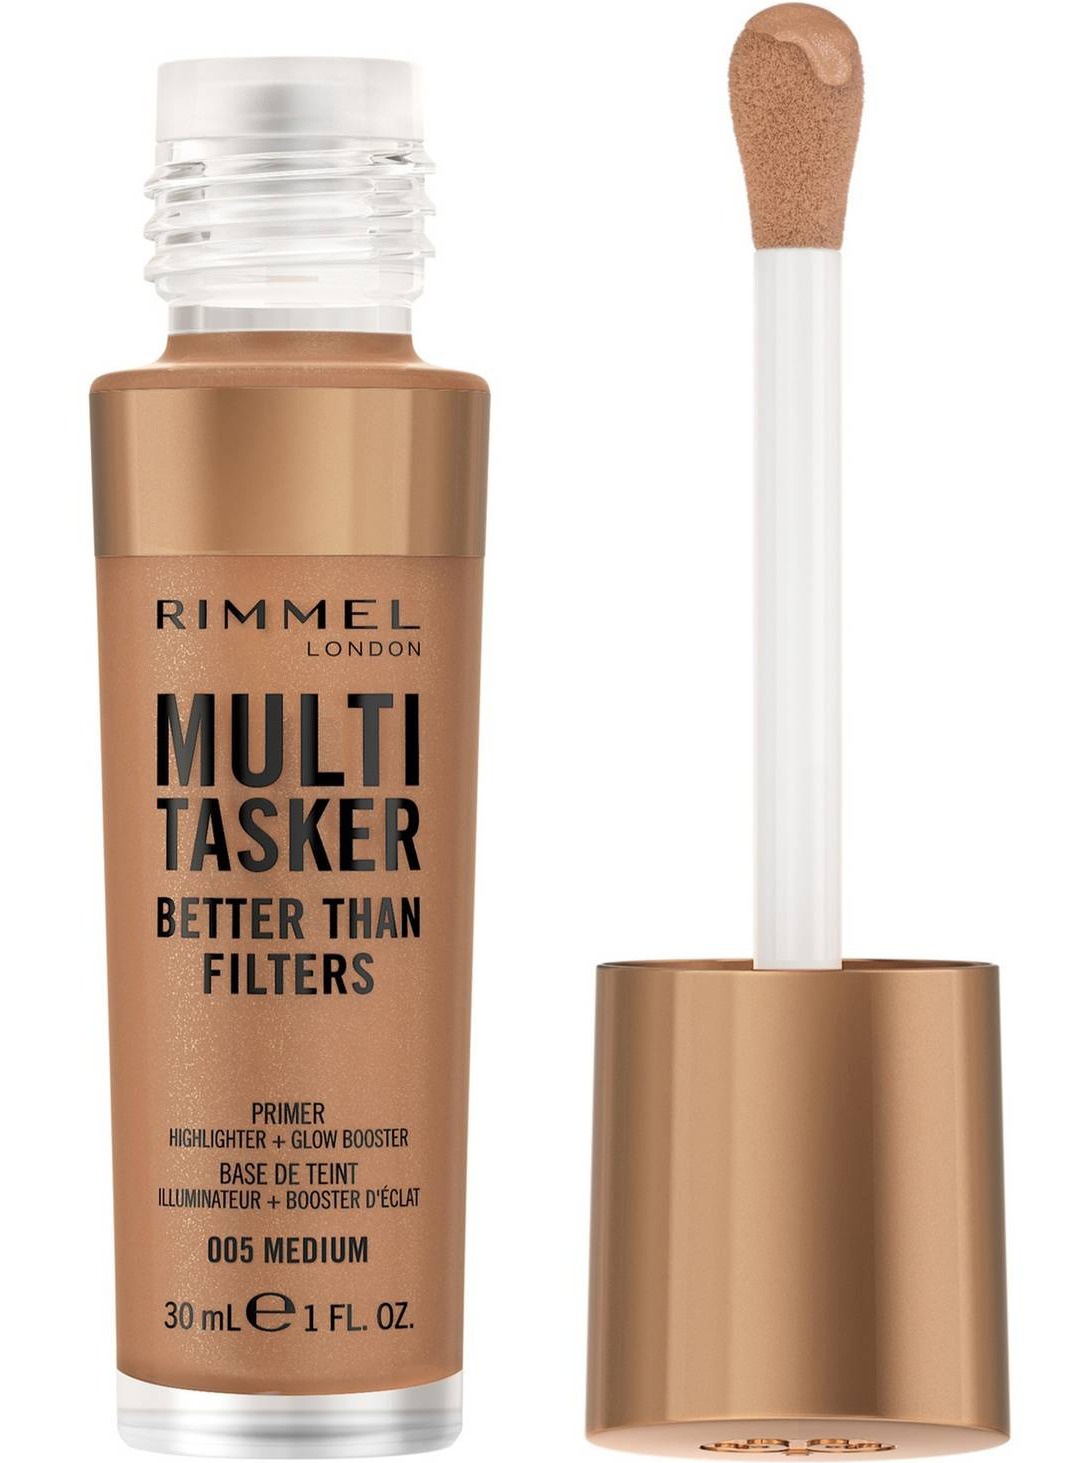 Rimmel London Multi Tasker Better Than Filters Primer